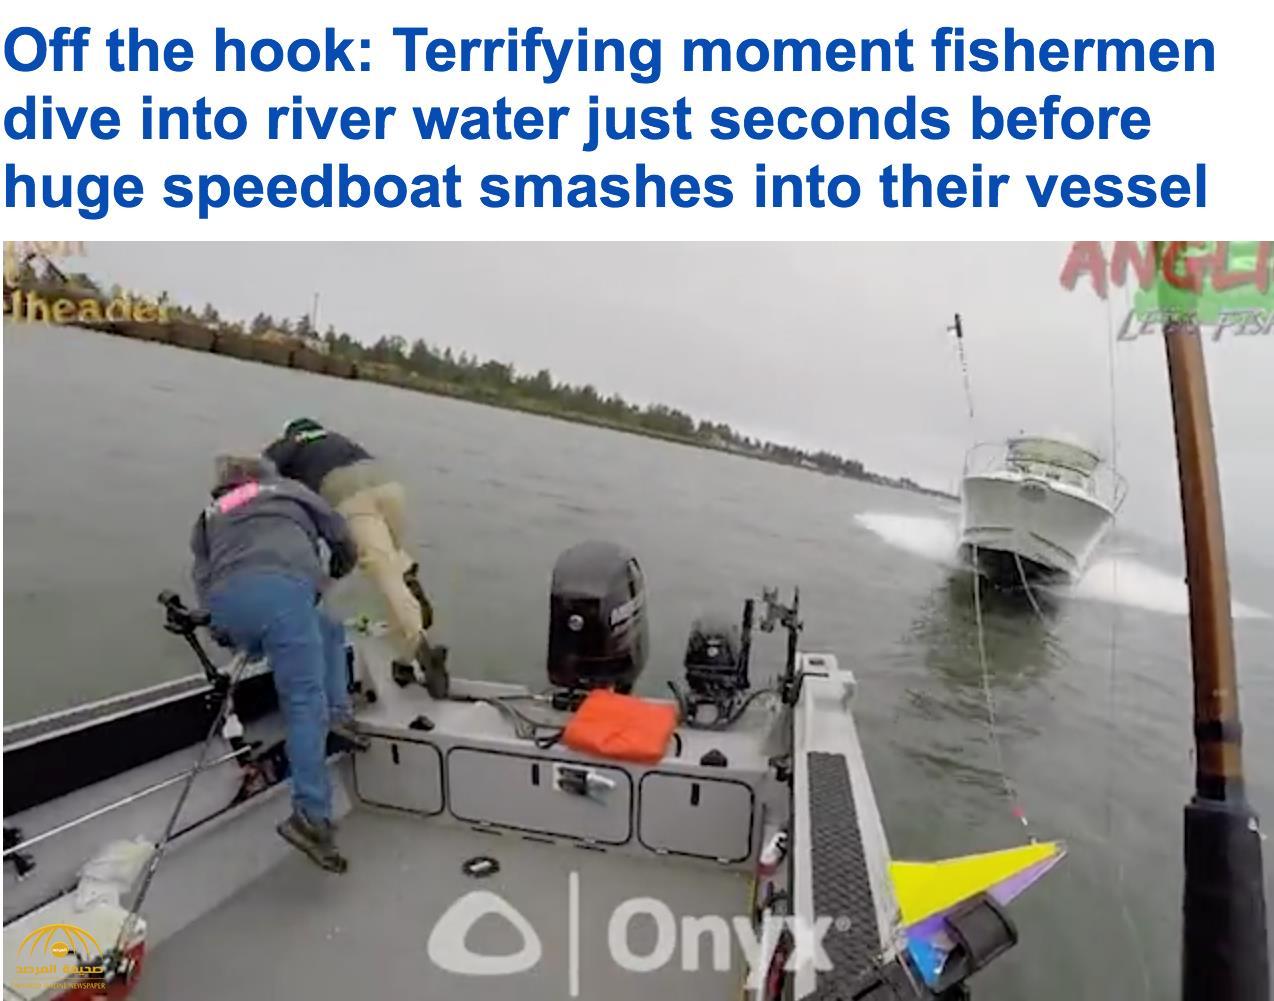 لحظات تكتم الأنفاس.. اصطدام قاربين في نهر "كولومبيا".. شاهد: رد فعل الصيادين!